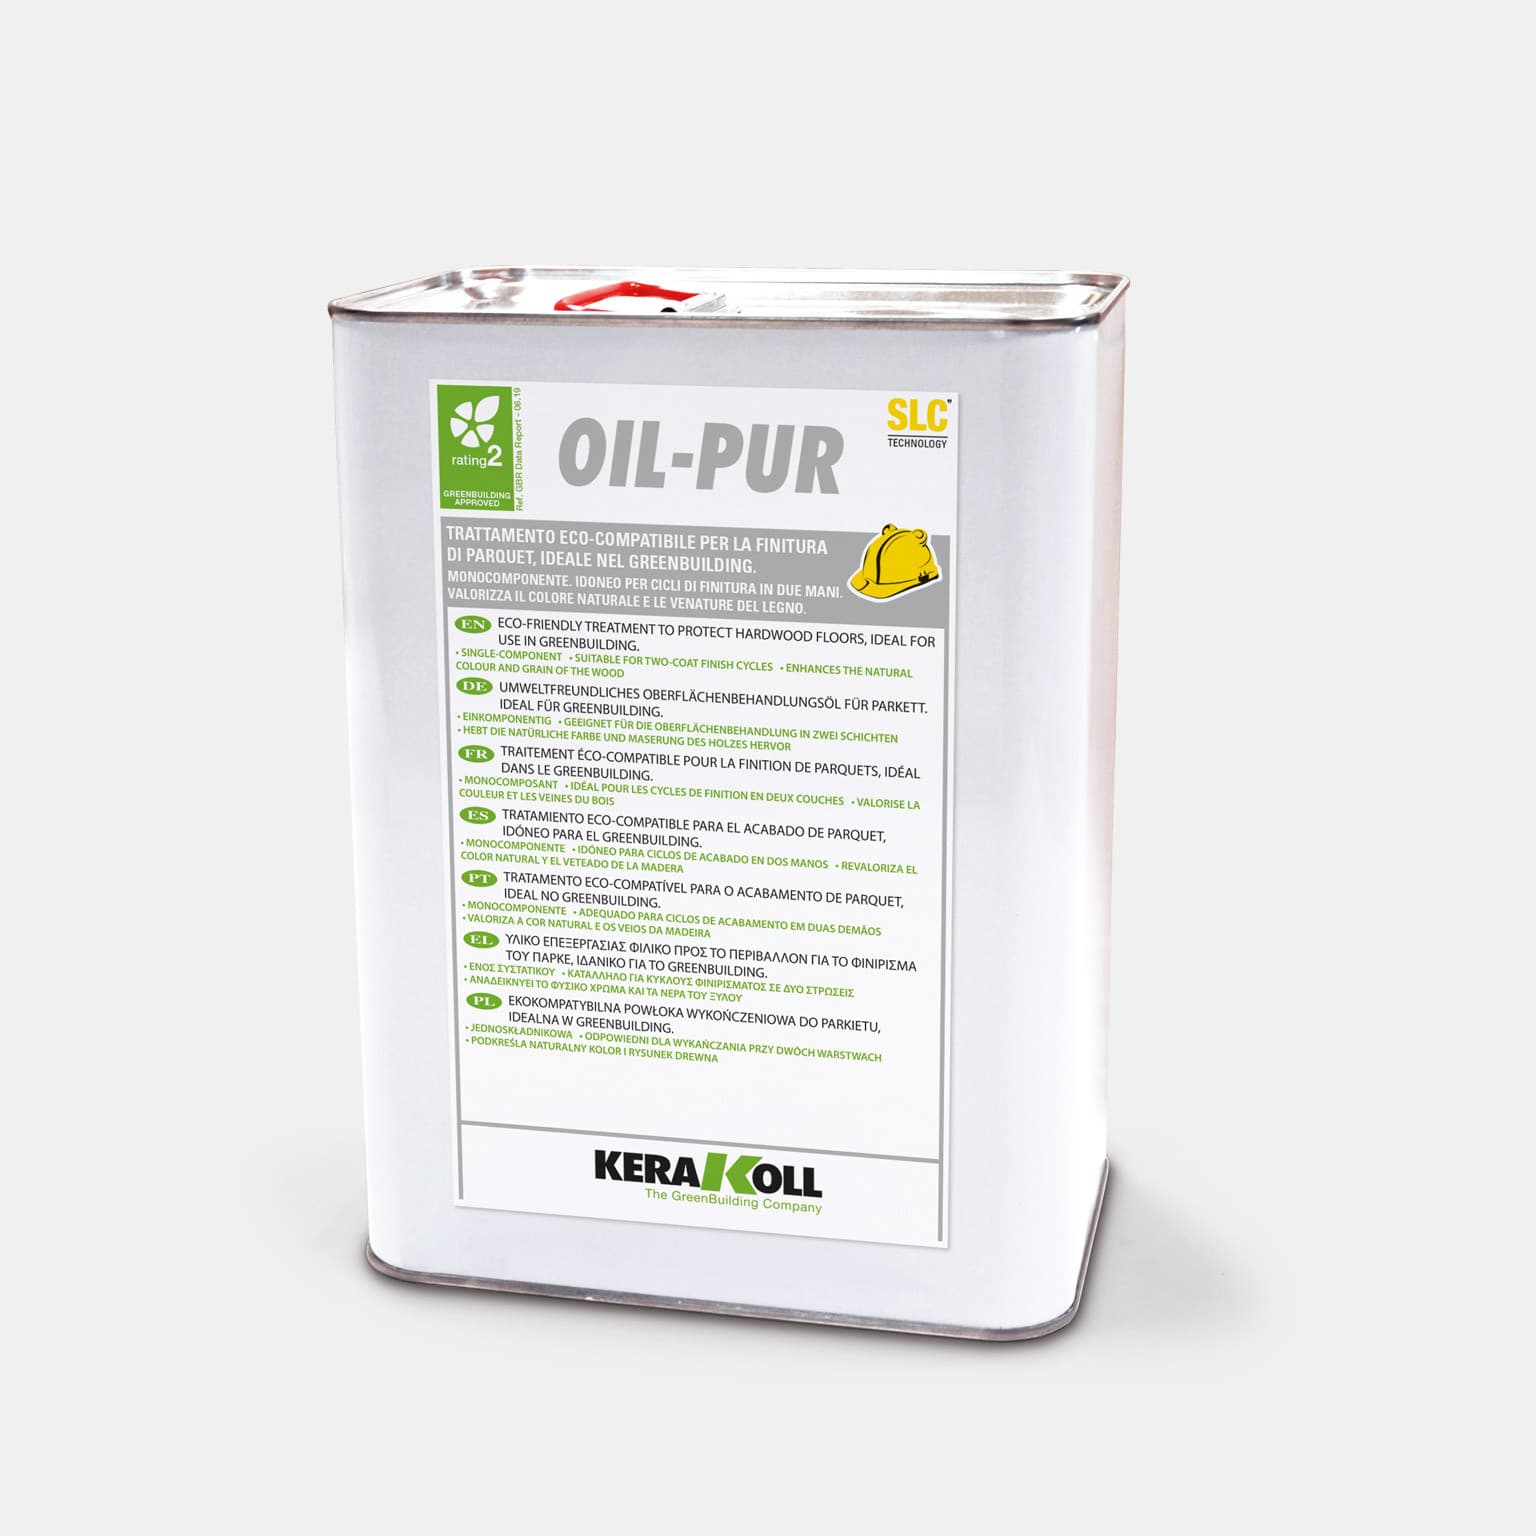 A Kerakoll Oil-Pur egy Öko‑kompatibilis termék parketta polírozásához, ideális használatra a GreenBuildingben. 